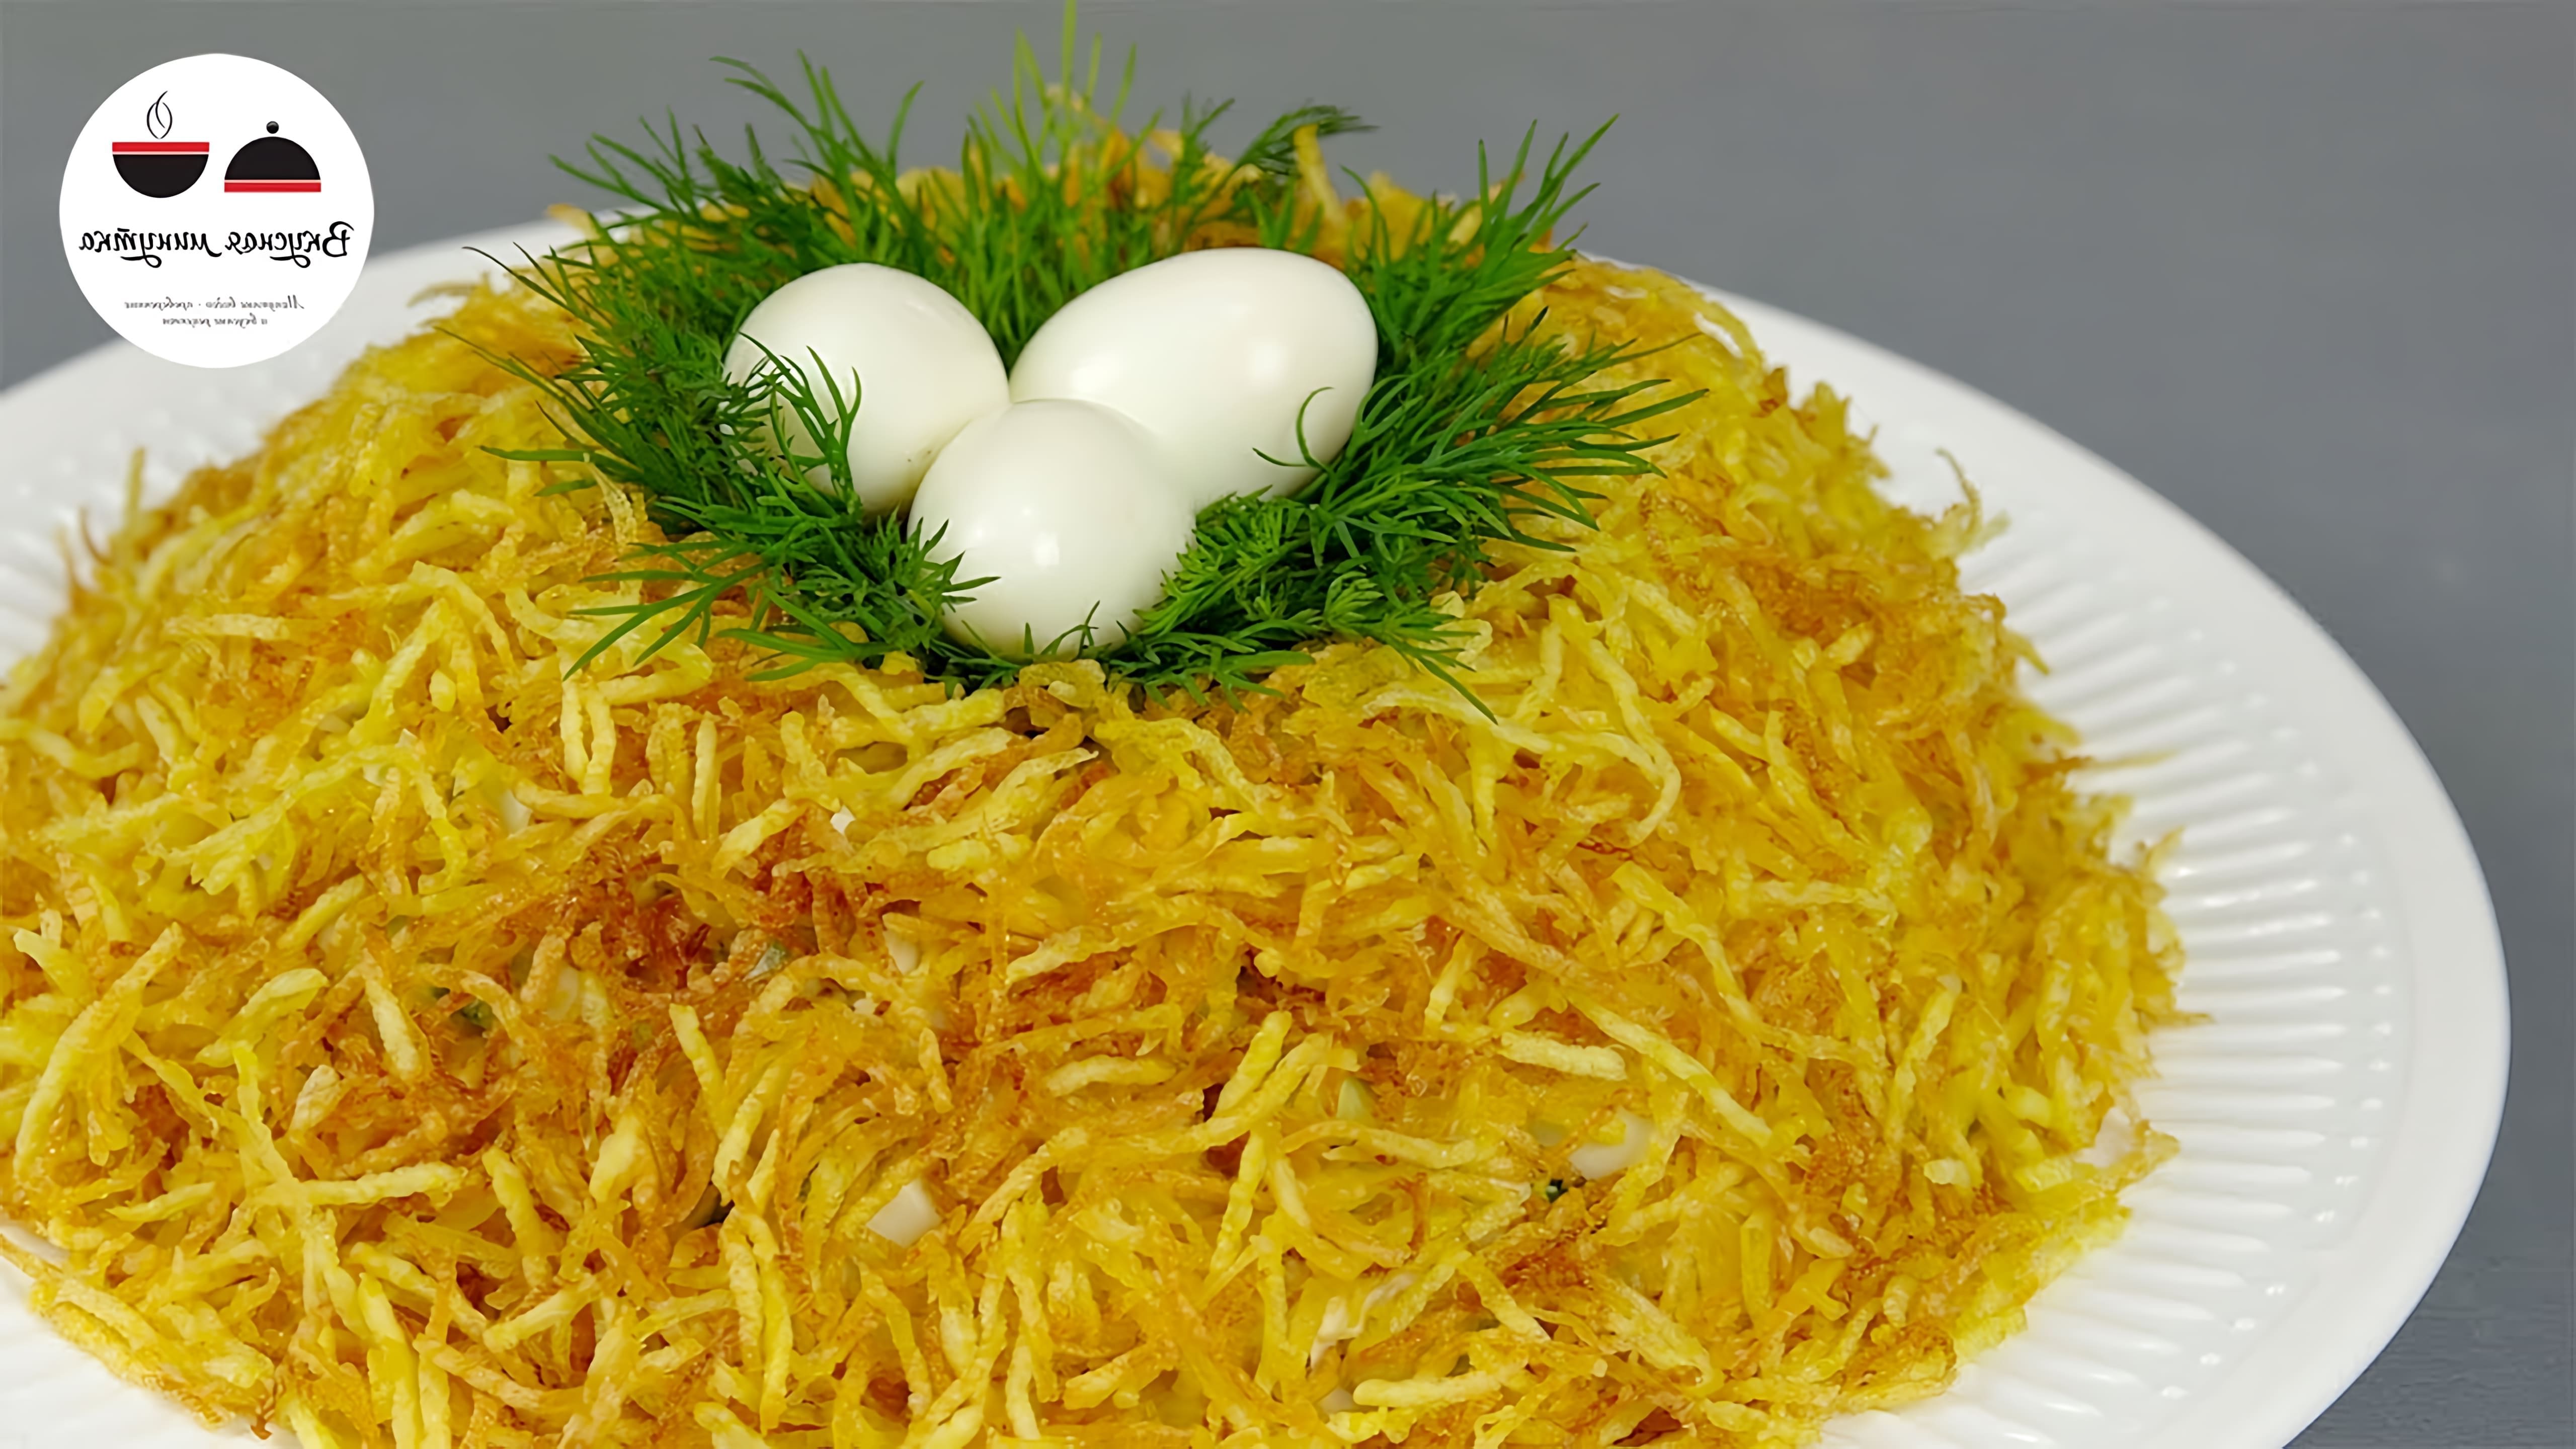 Салат "Гнездо Глухаря" - это идеальное блюдо для праздничного стола